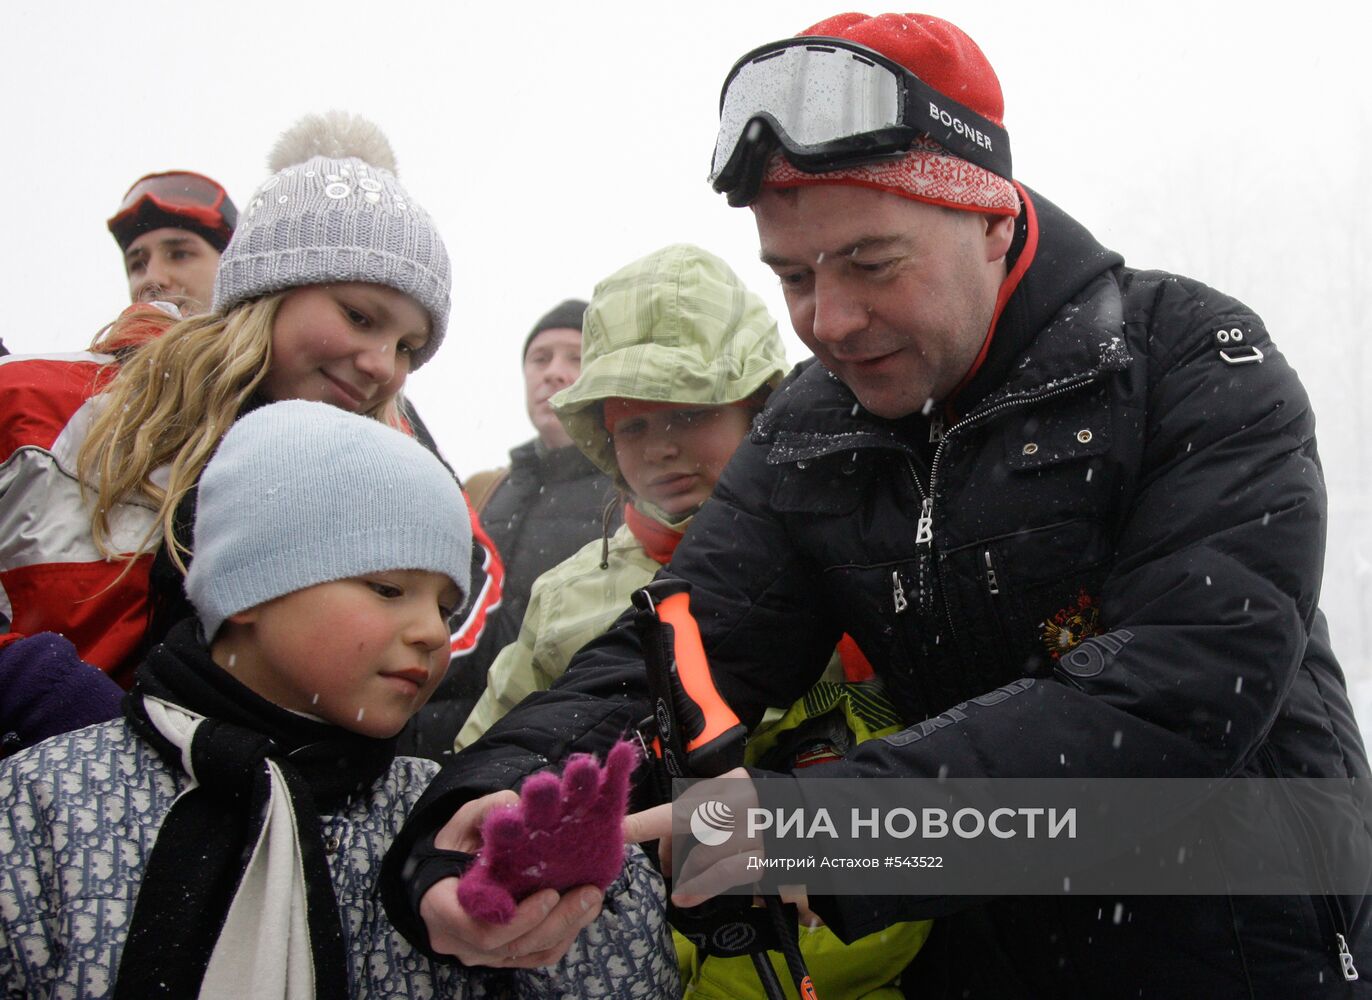 Д. Медведев на горнолыжном курорте "Красная Поляна"